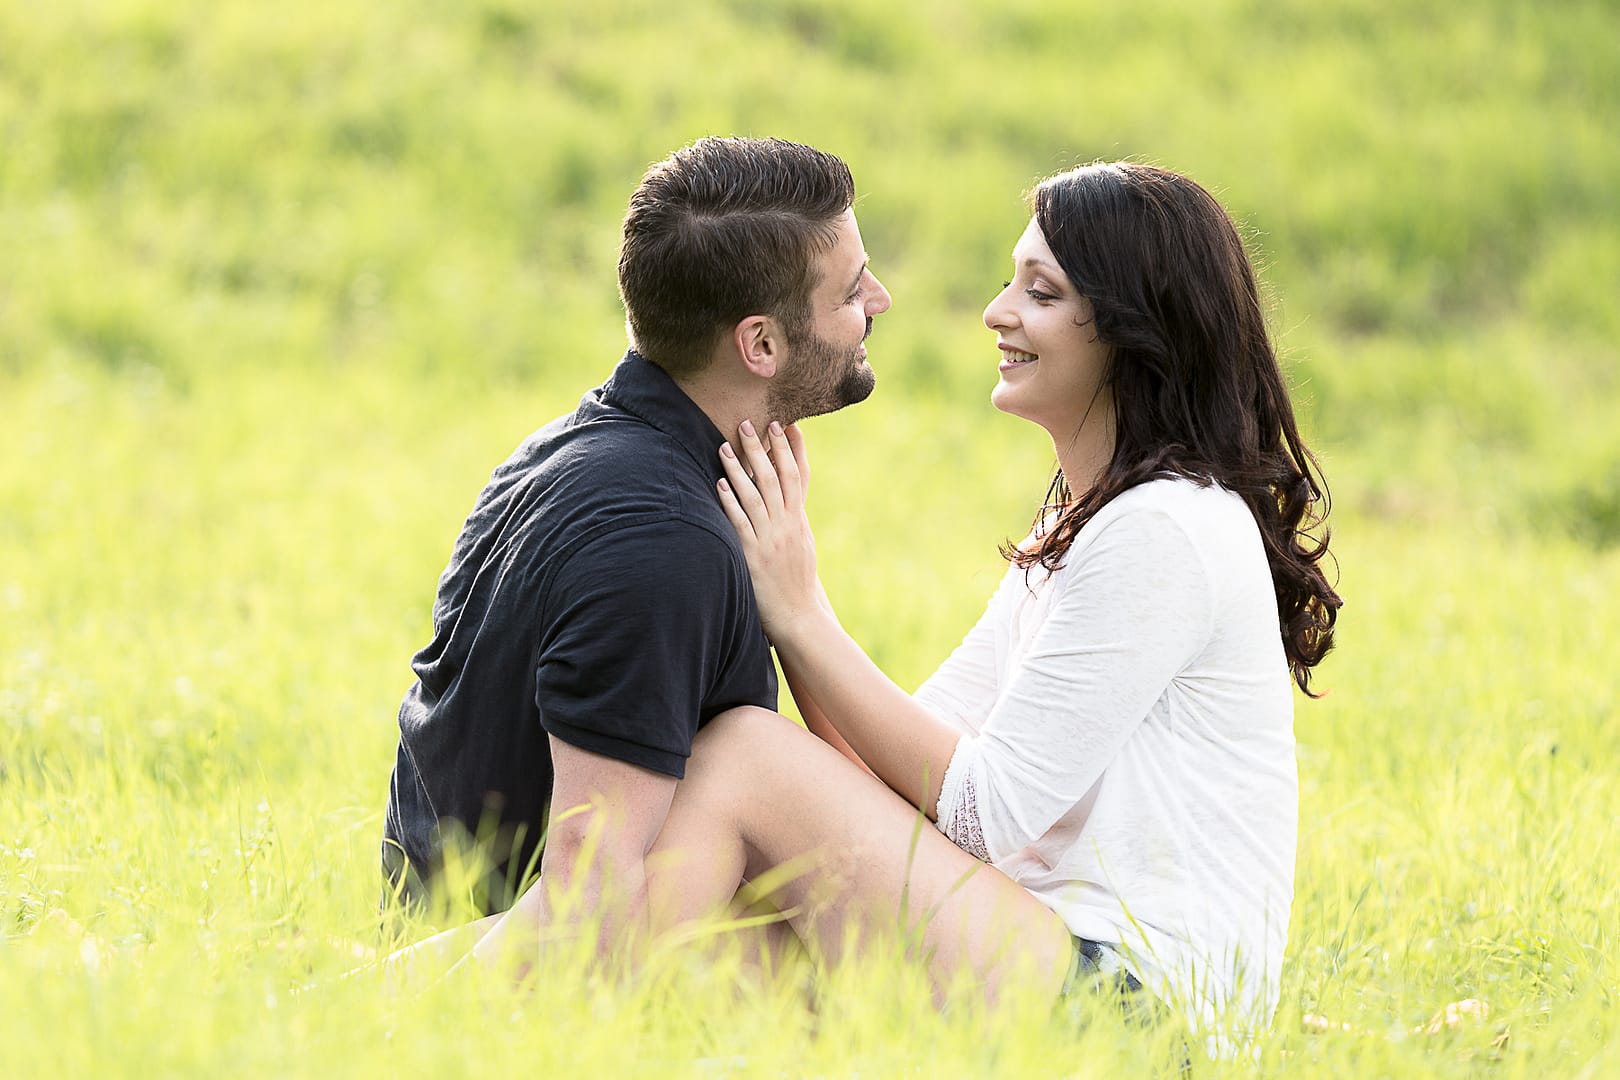 partner-fotoshooting: Ein Liebespaar sitzt in einem hellgrünen Feld nah bei einander. Sie lächeln und schauen sich in die Augen. Die Frau fasst den Mann an seinem Hals an.